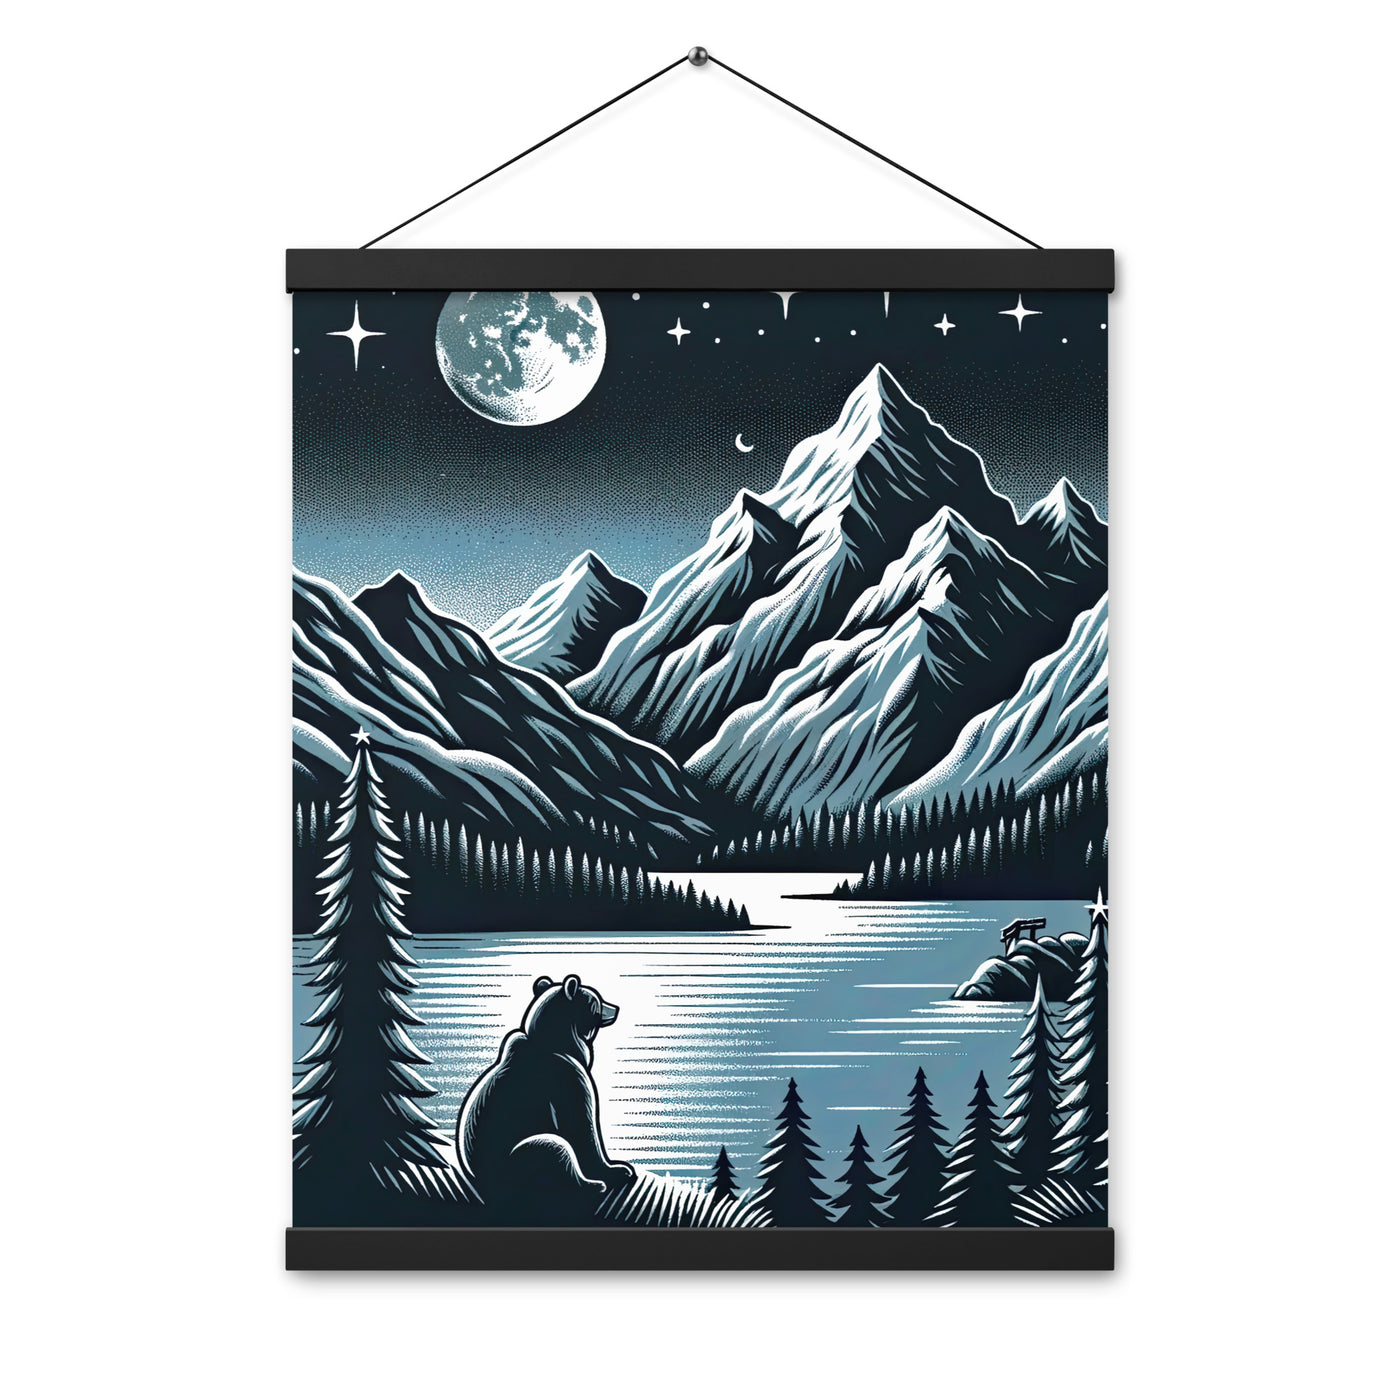 Bär in Alpen-Mondnacht, silberne Berge, schimmernde Seen - Premium Poster mit Aufhängung camping xxx yyy zzz 40.6 x 50.8 cm